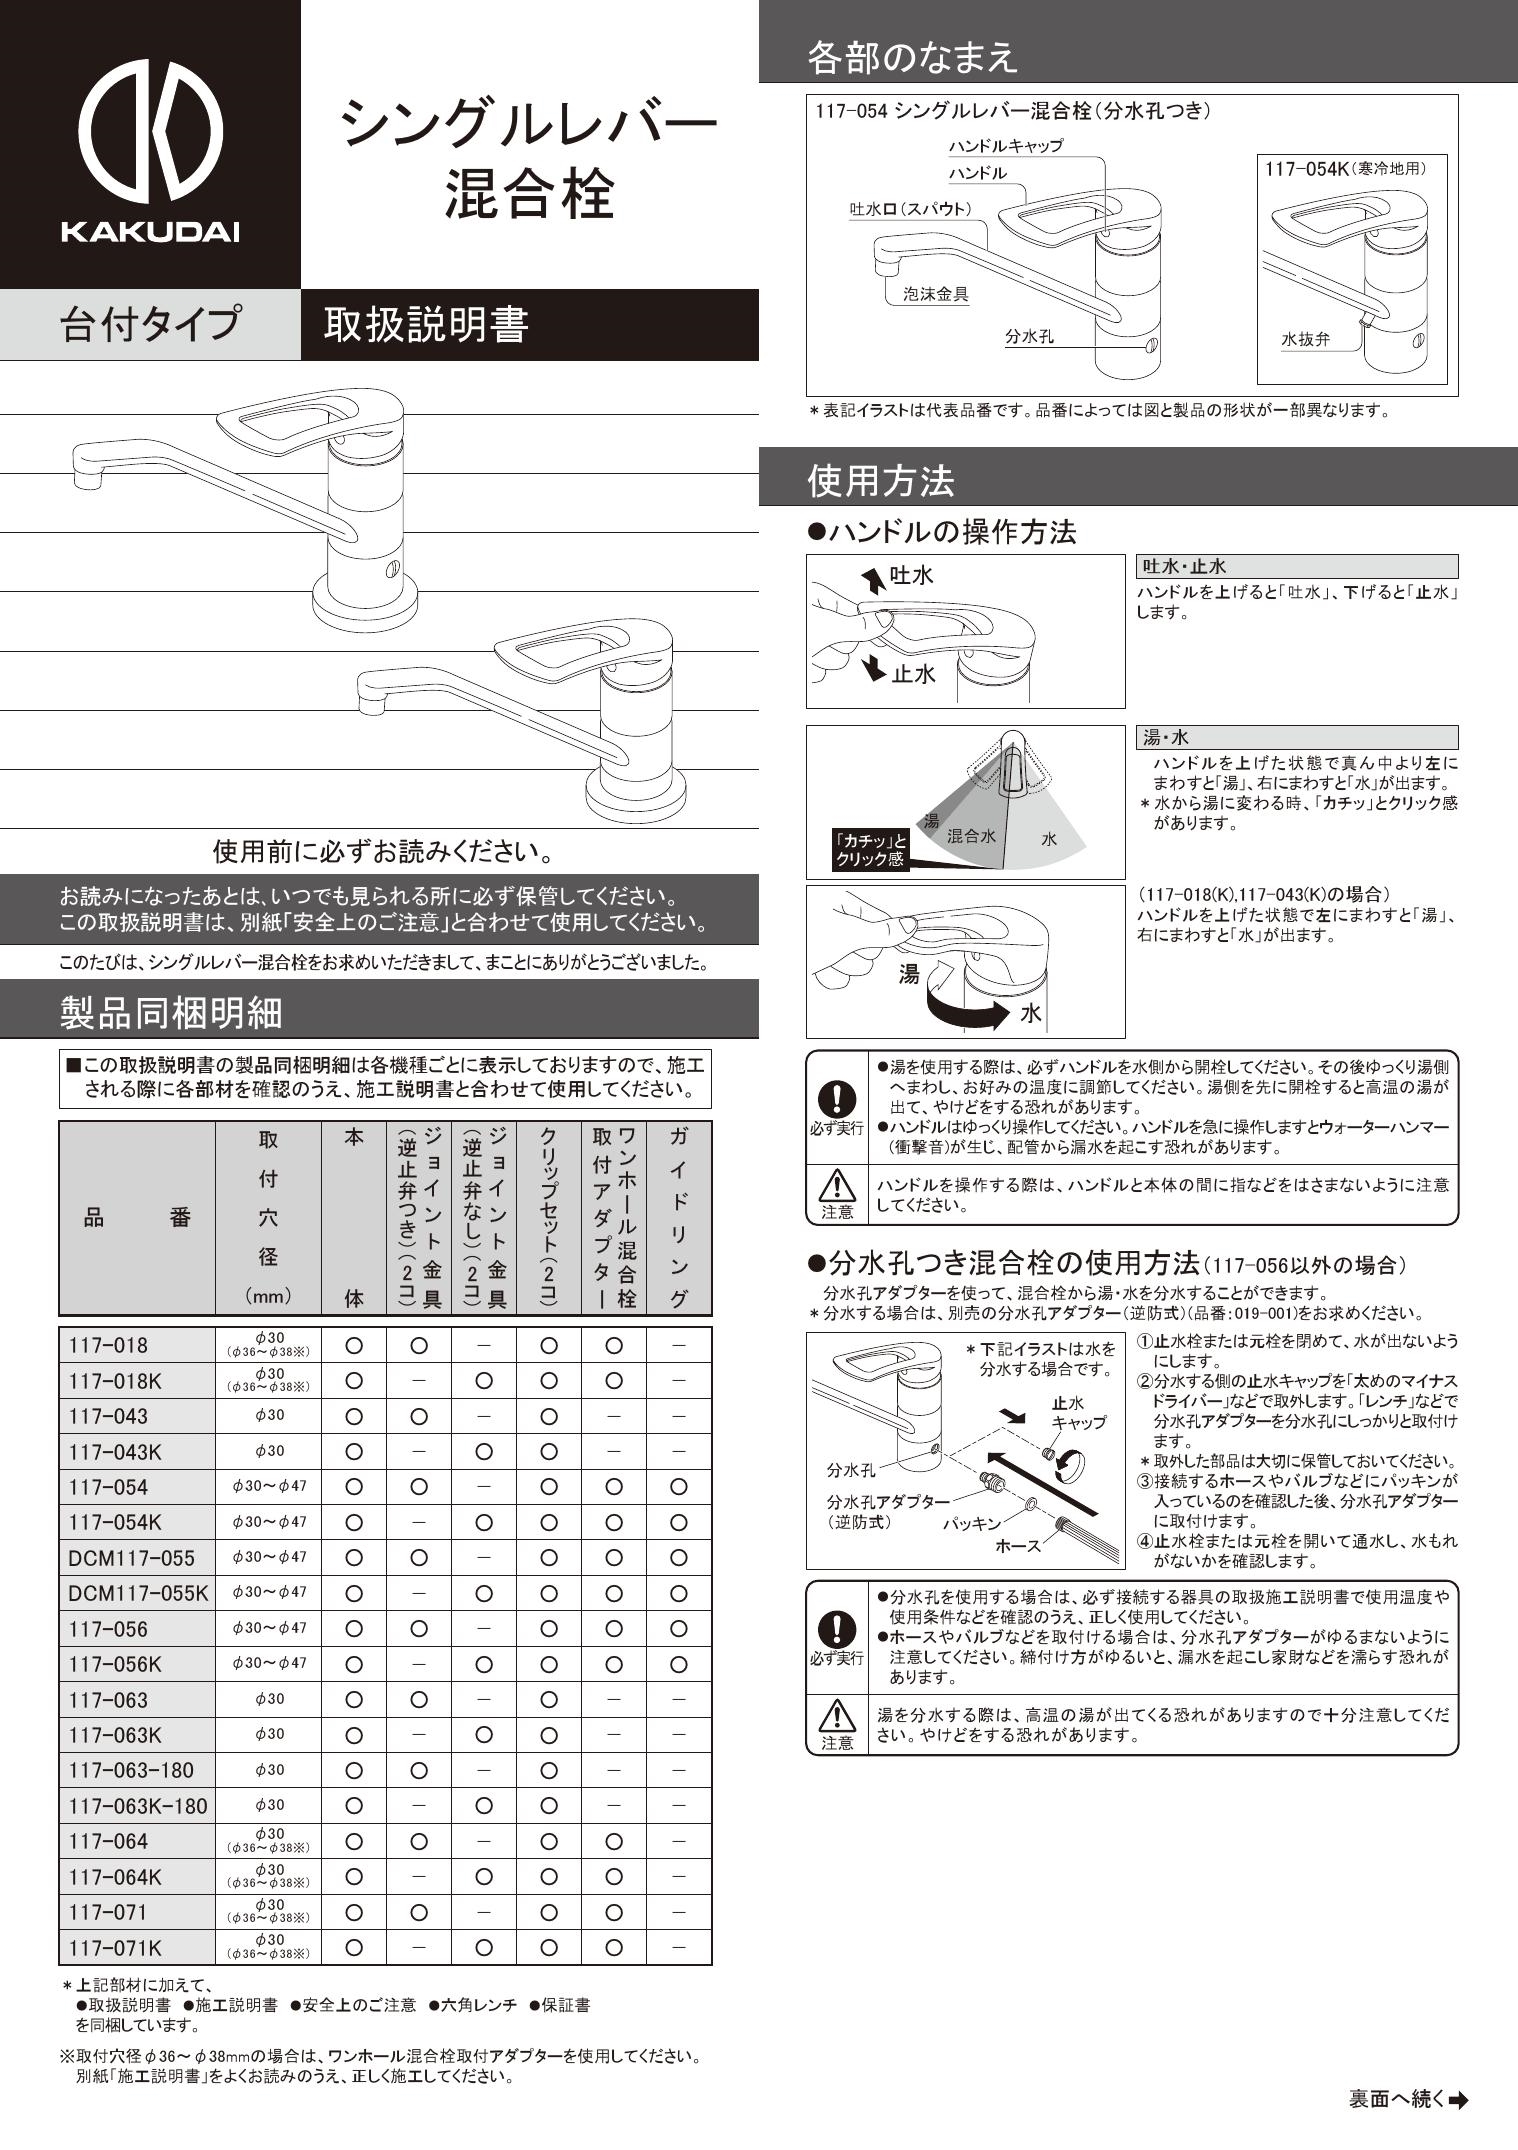 カクダイ 【117-062-180】カクダイ シングルレバー混合栓 水栓